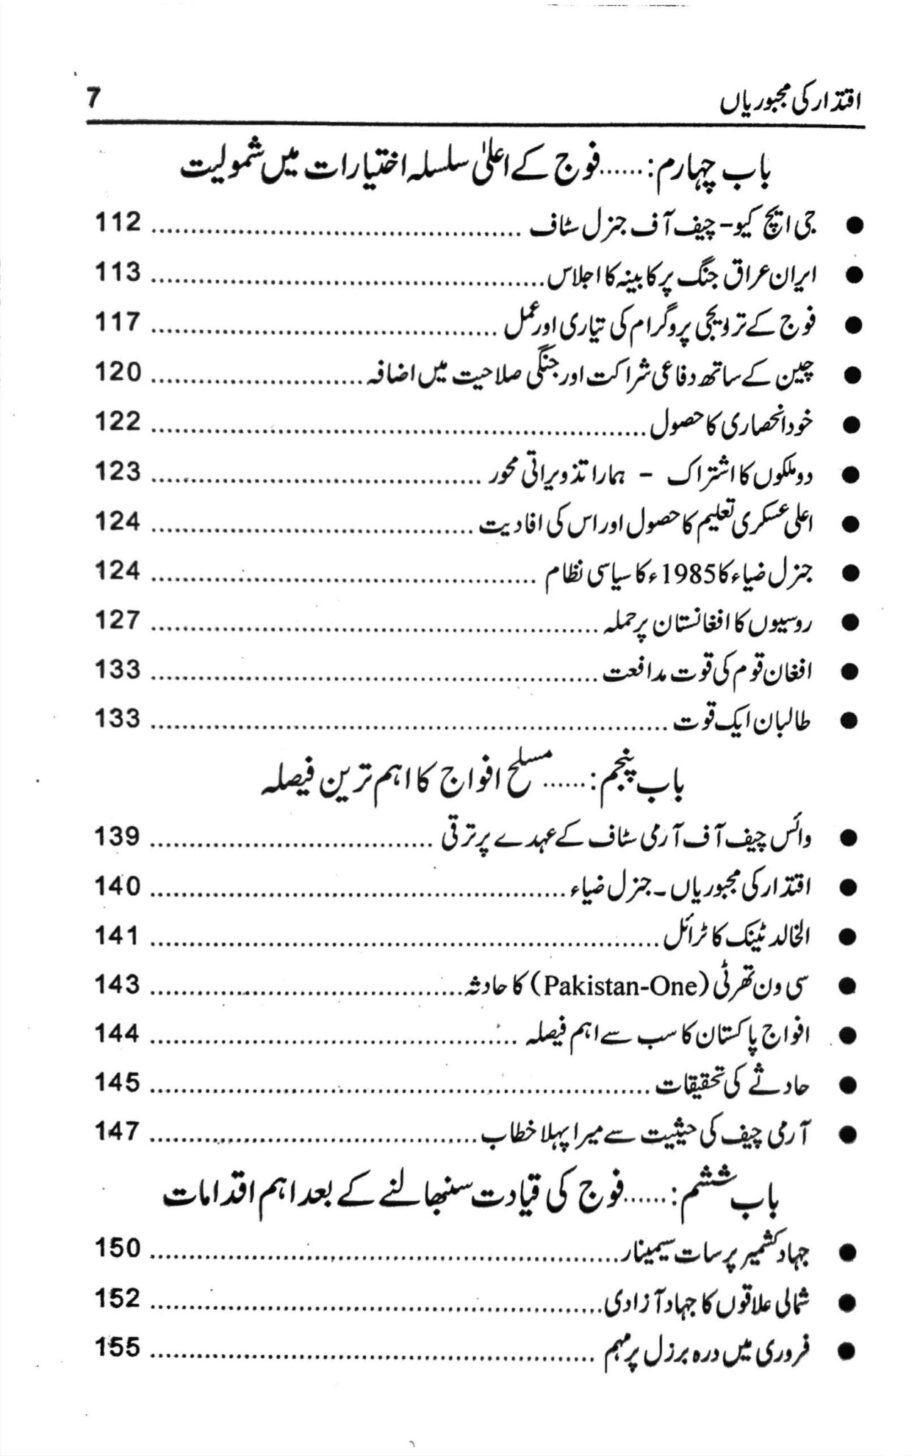 colonel ashfaq hussain writer books